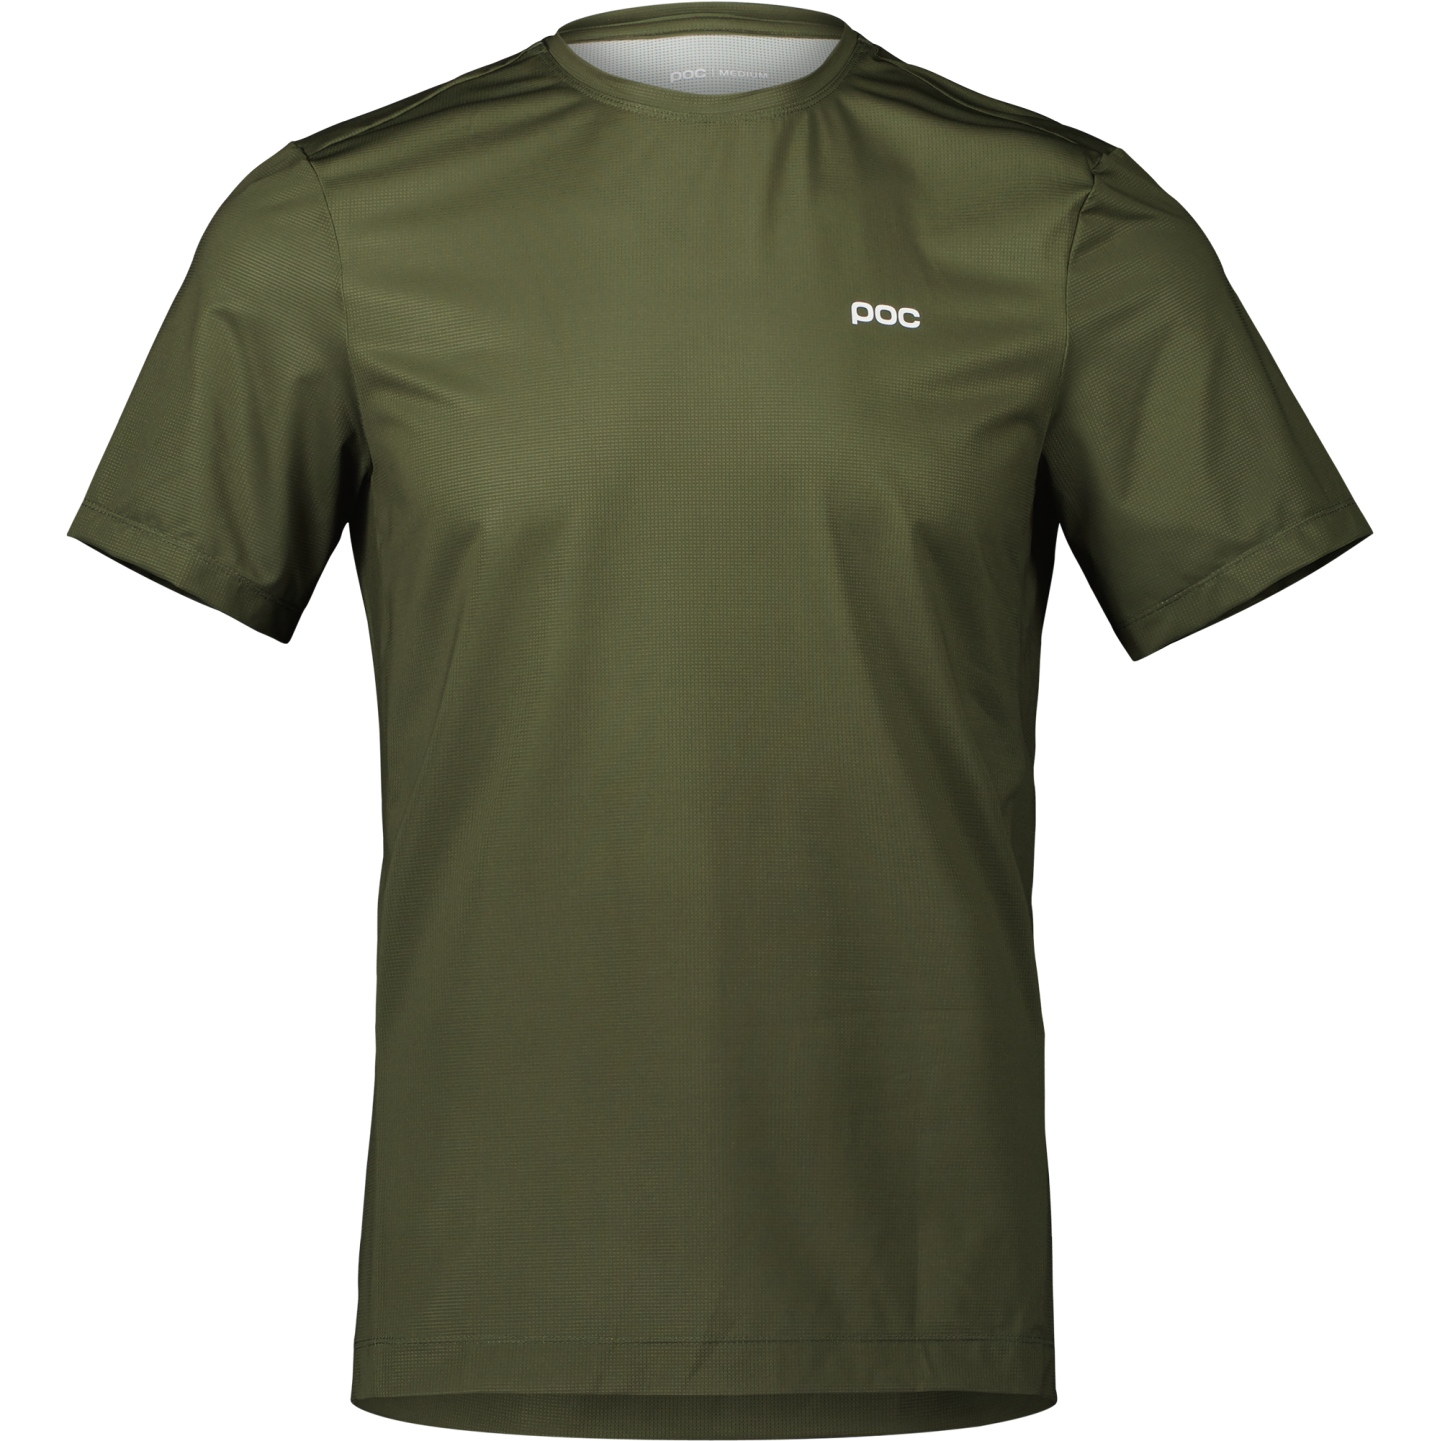 Produktbild von POC Air T-Shirt - 1460 Epidote Green